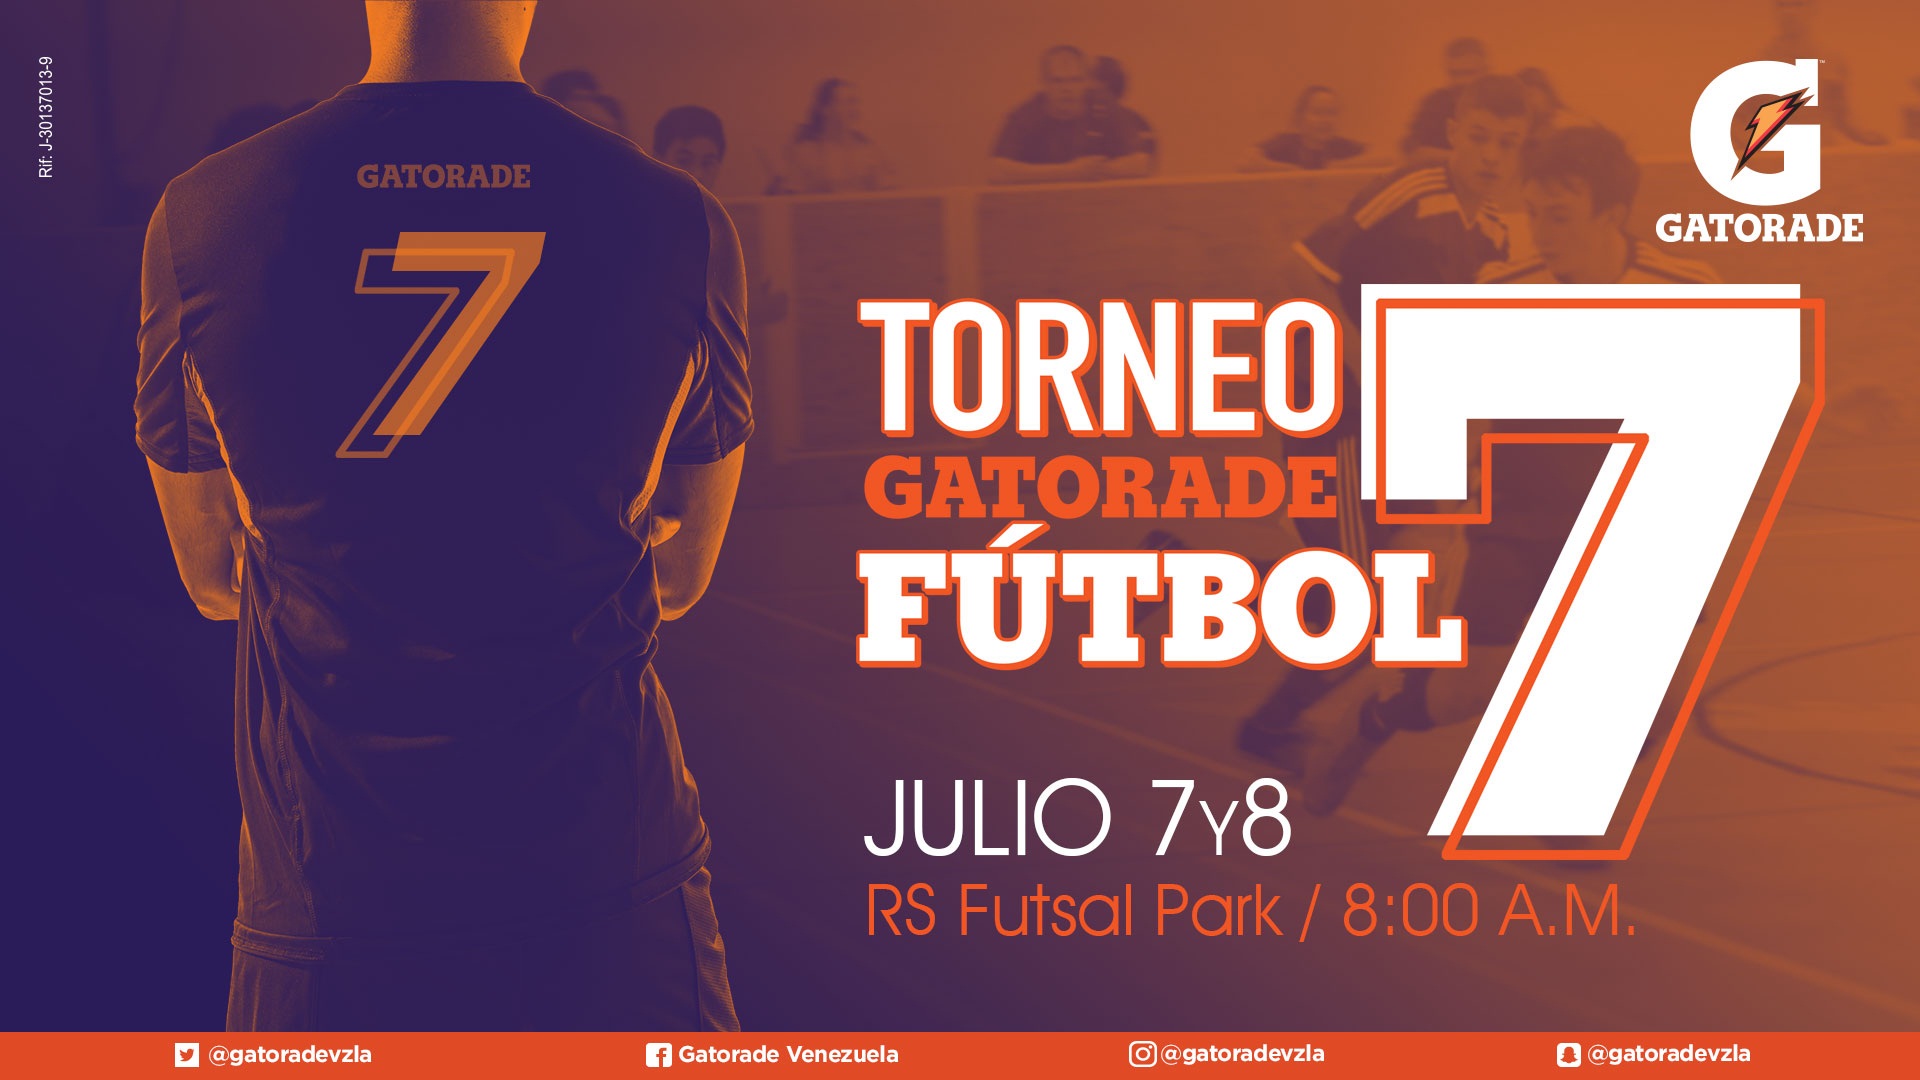 Torneo Gatorade Fútbol 7 Vs. 7